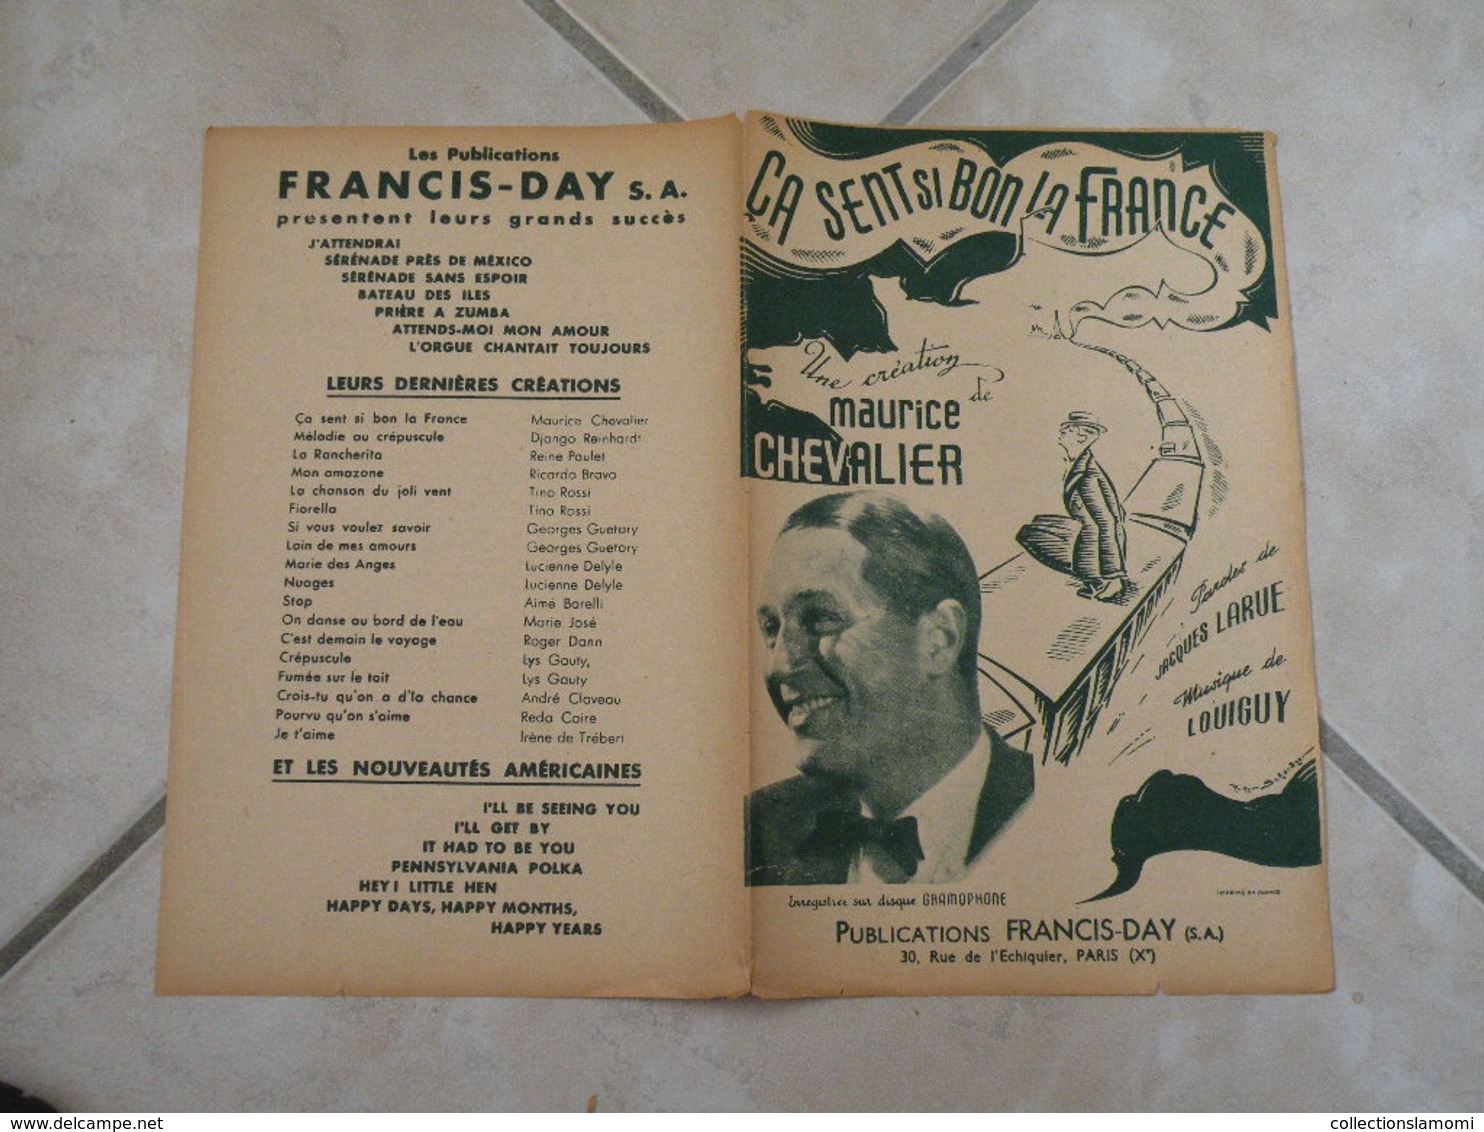 Ca Sent Si Bon La France (Maurice Chevalier)-(Paroles J. Larue)-(Musique Loquiguy) Partition 1942 - Chansonniers